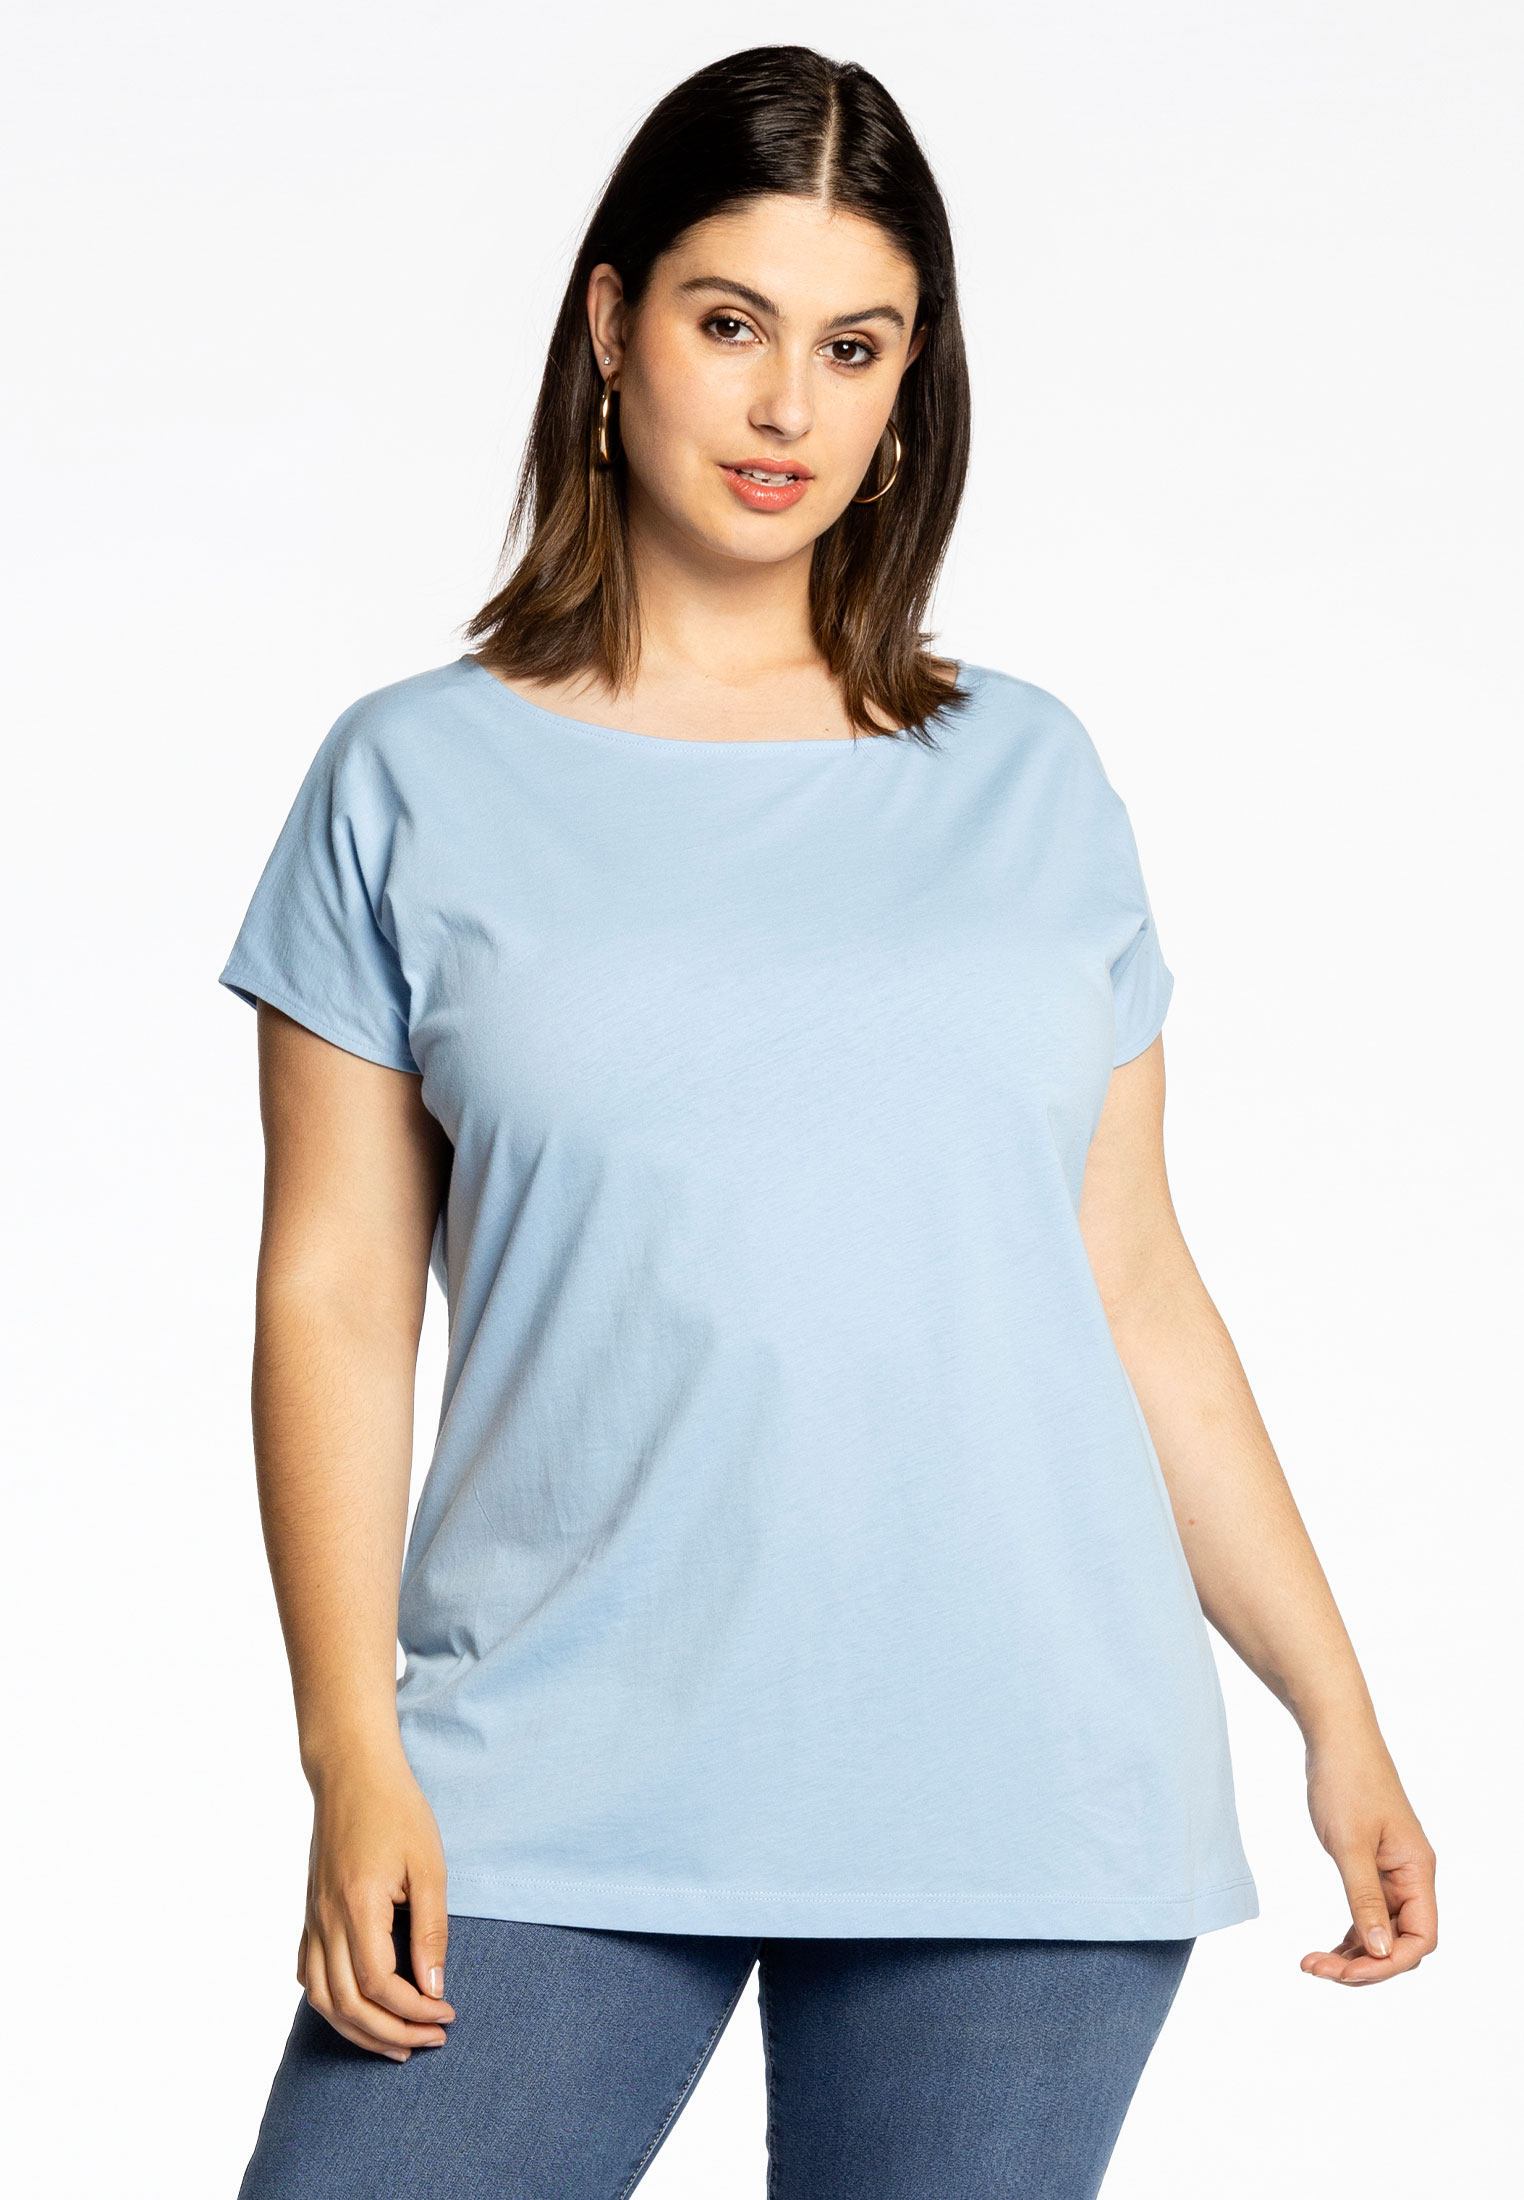 T-shirt kapmouwen COTTON 54/56 light blue